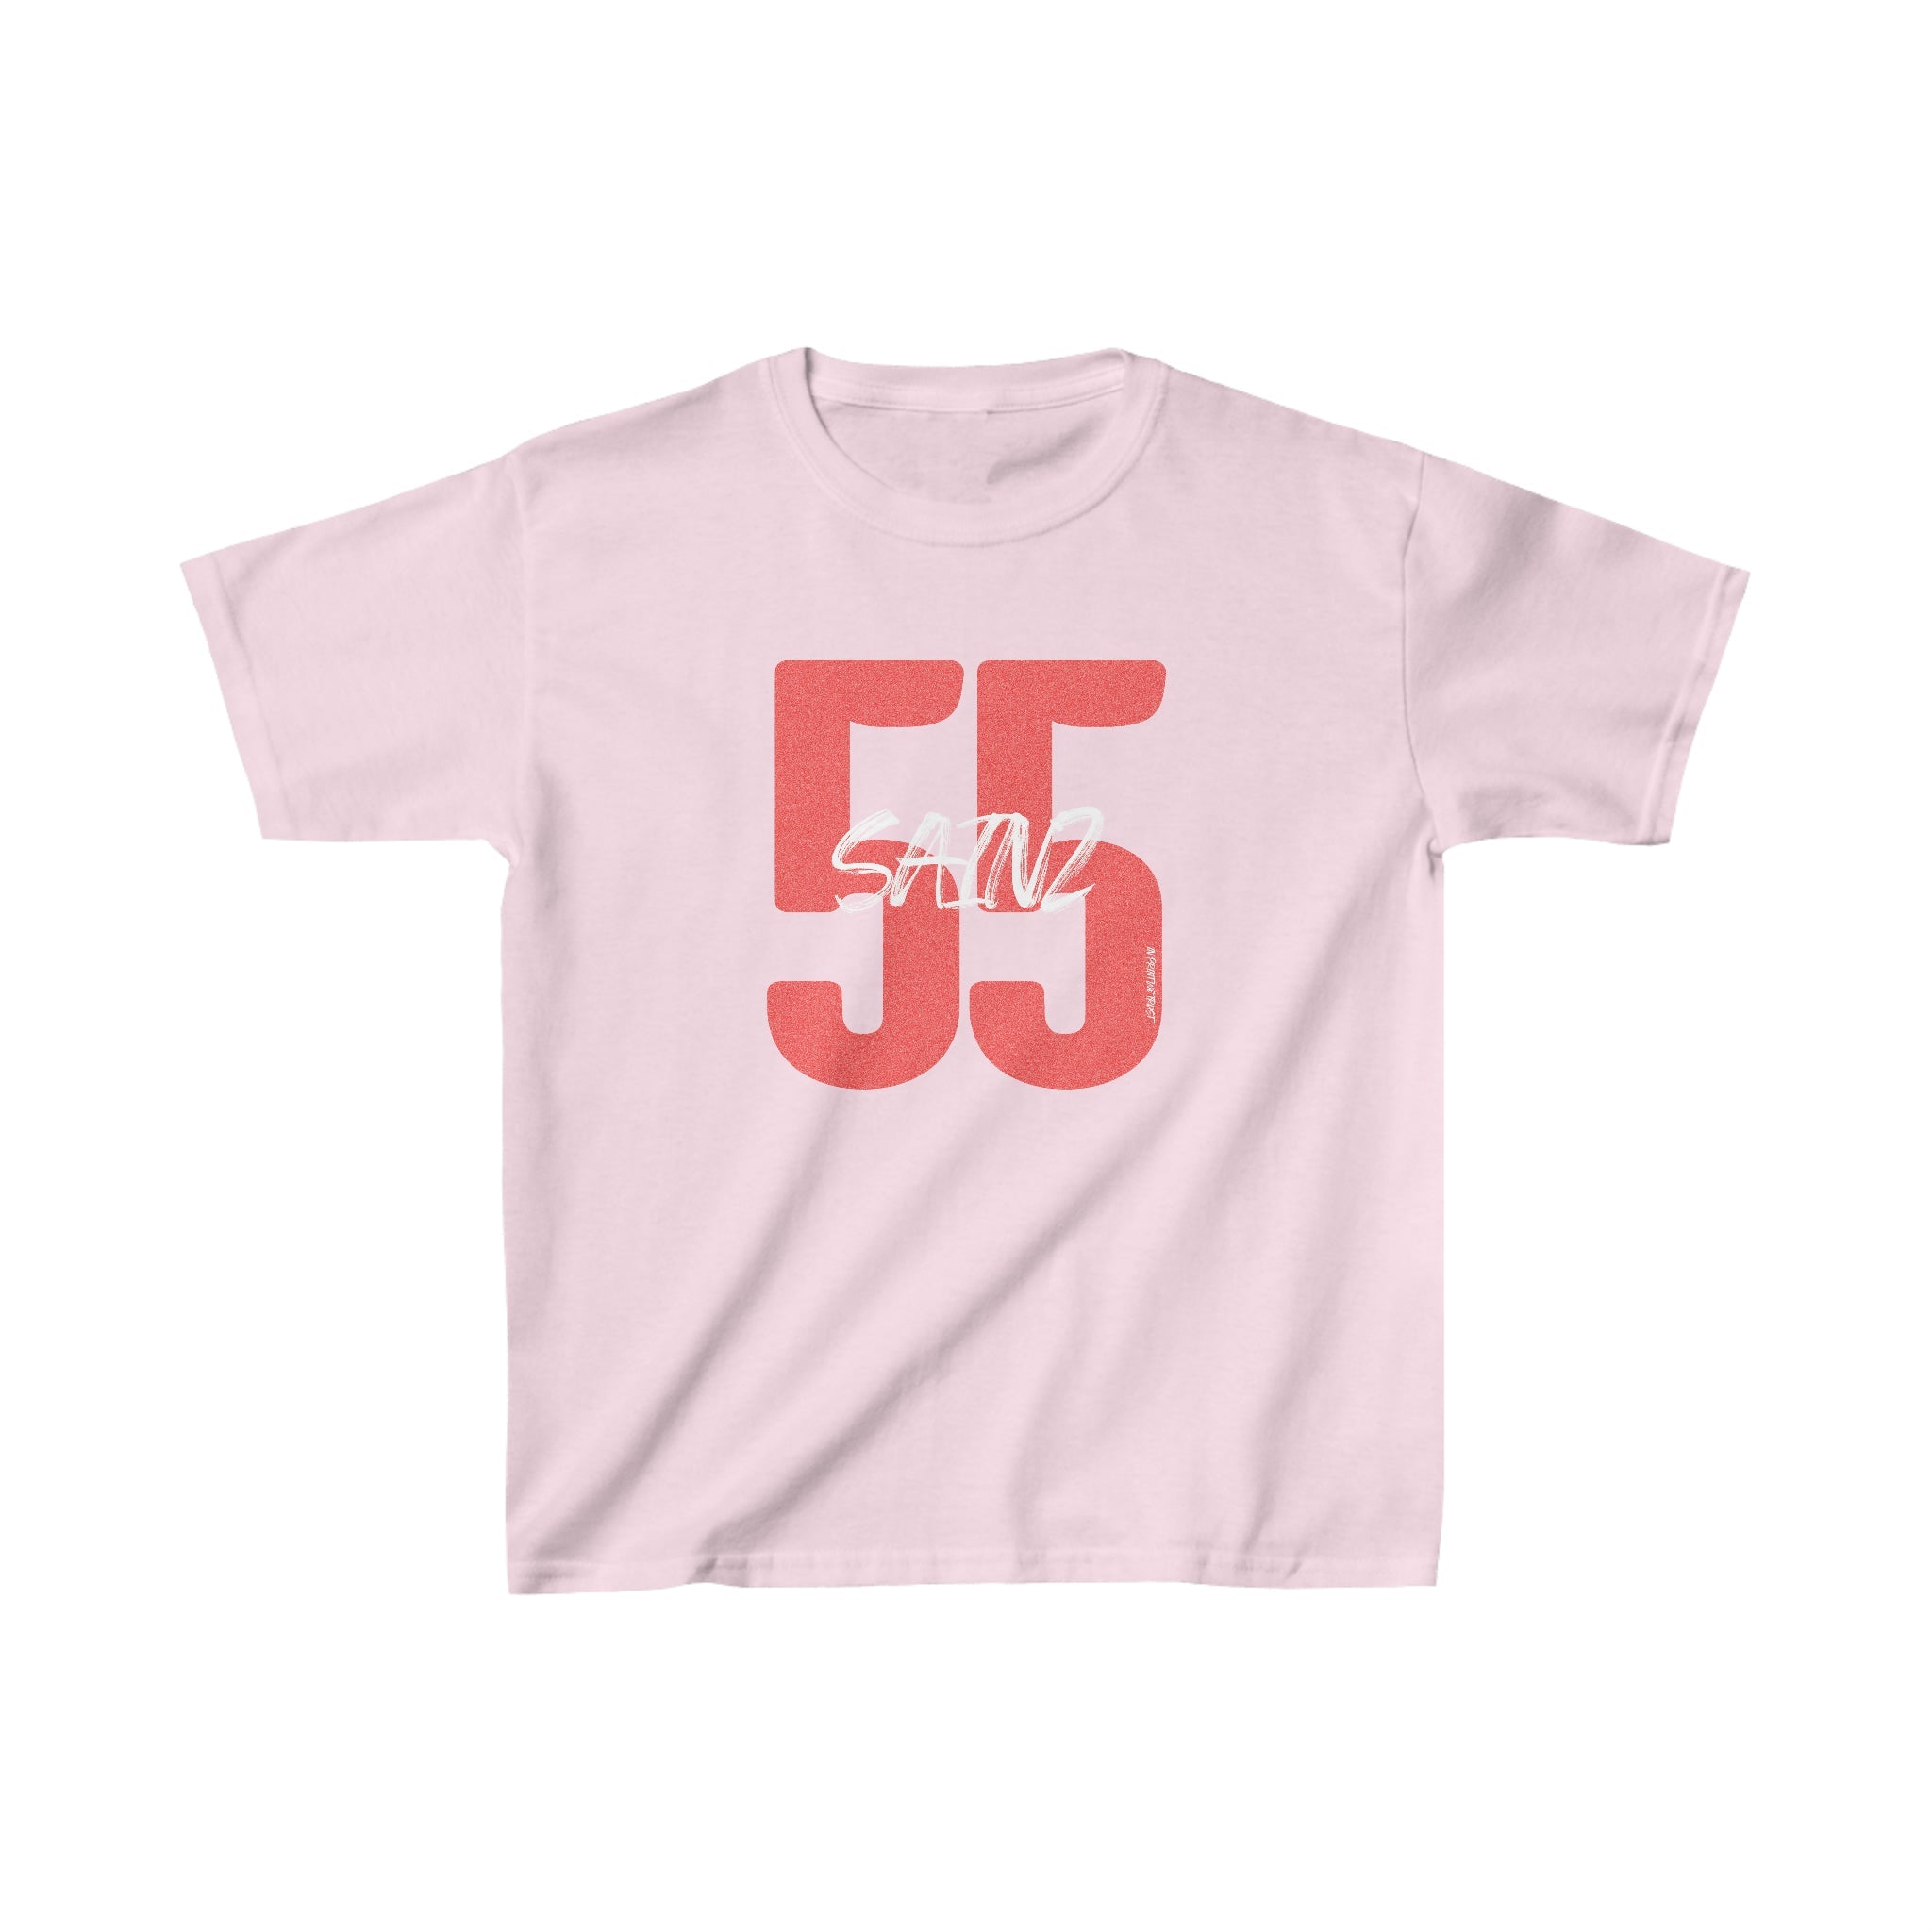 'Sainz 55' baby tee - In Print We Trust